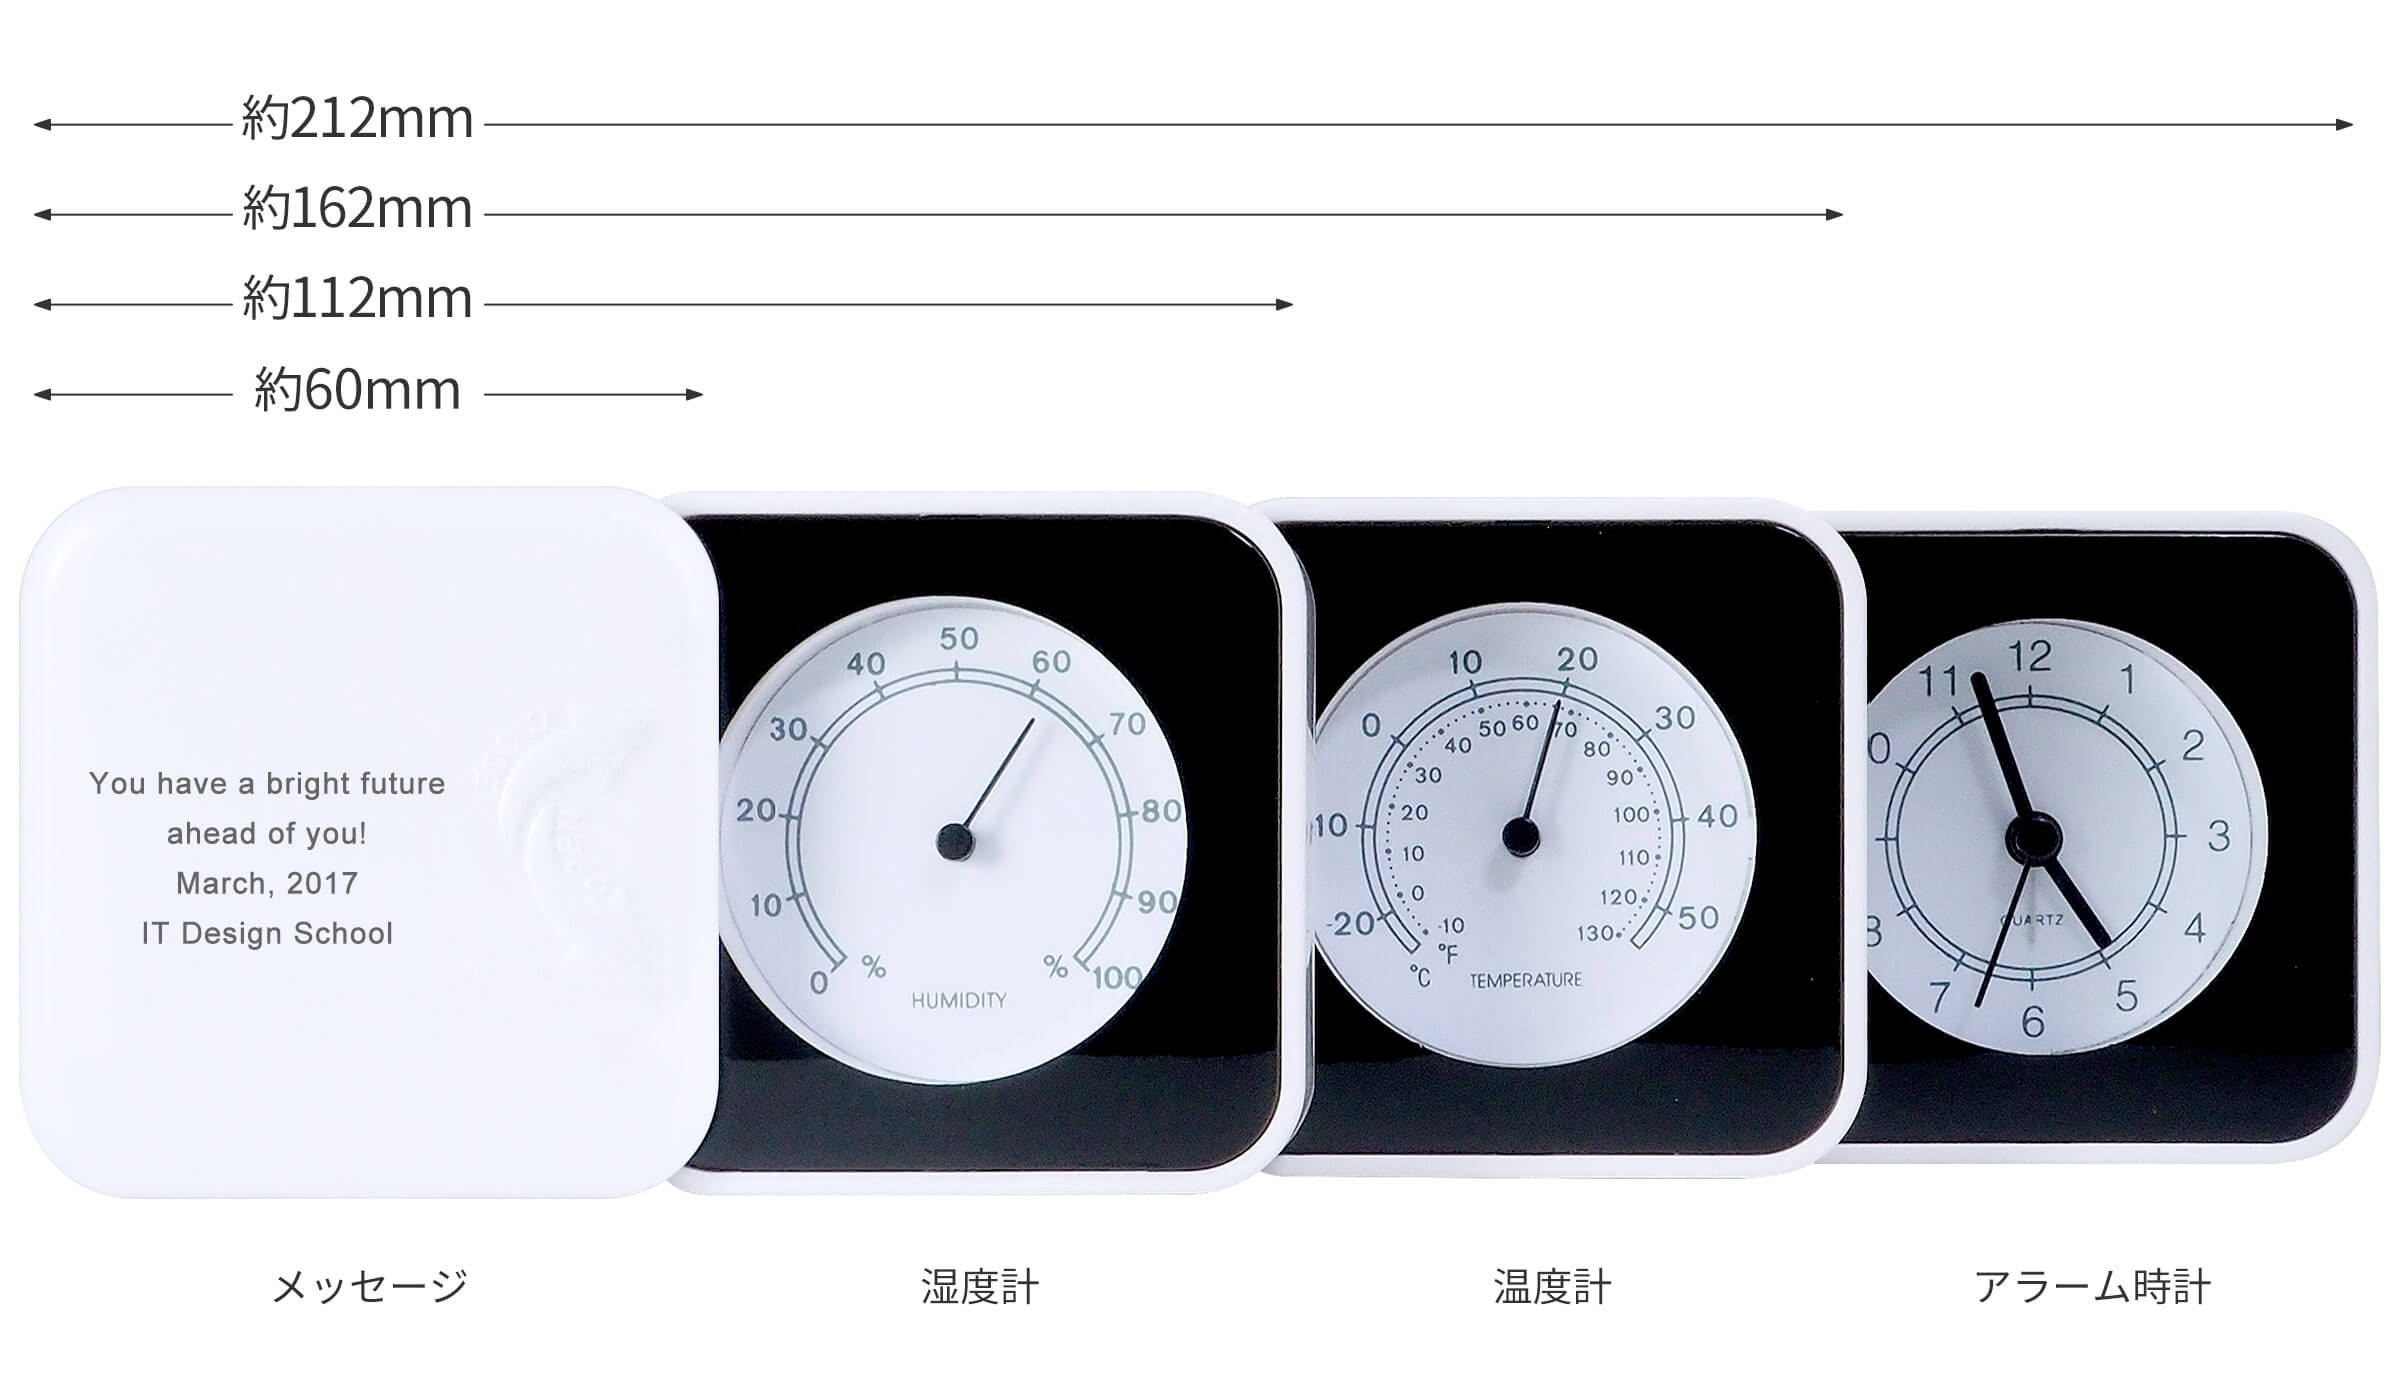 メッセージ・湿度計・温度計・アラーム時計